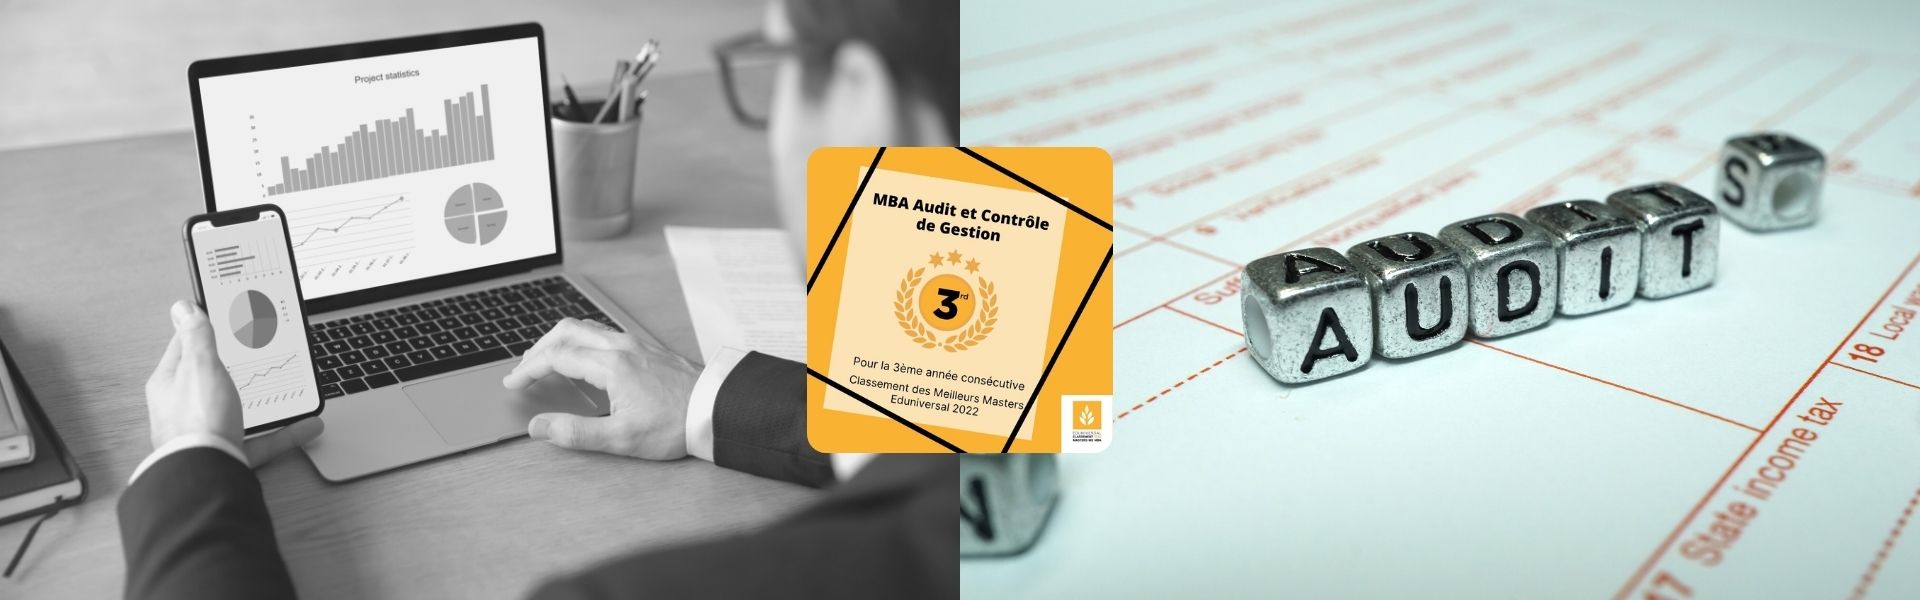 Article MBA Audit et Contrôle de Gestion classé 3ème Meilleur Master 2022